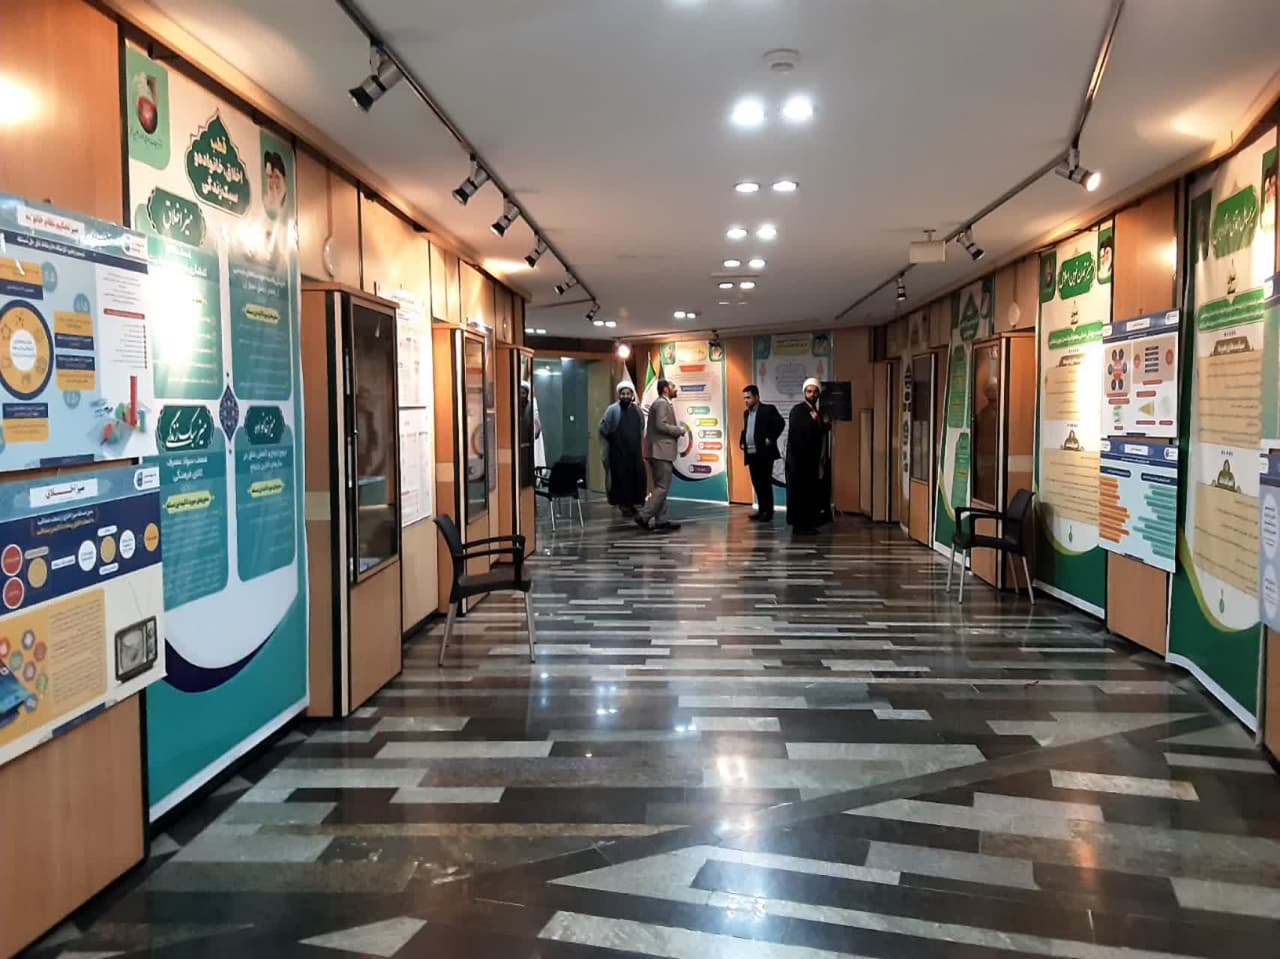 نمایشگاه دفتر تبلیغات در مجلس شورای اسلامی